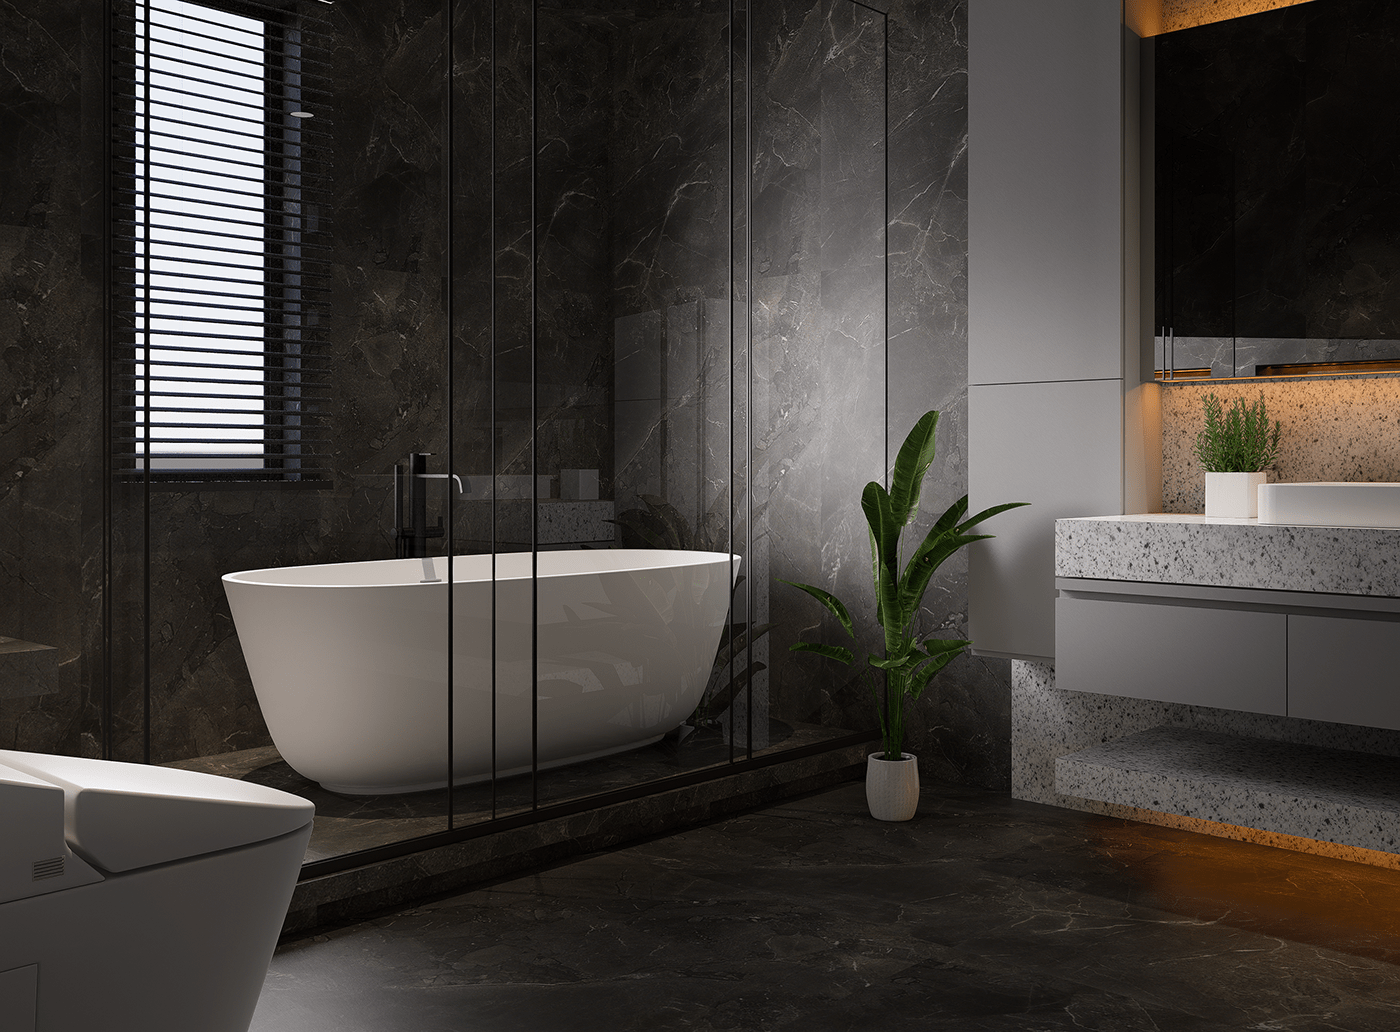 bathroom CGI D5 Render D5RENDER design furniture Interior Render rendering visualization